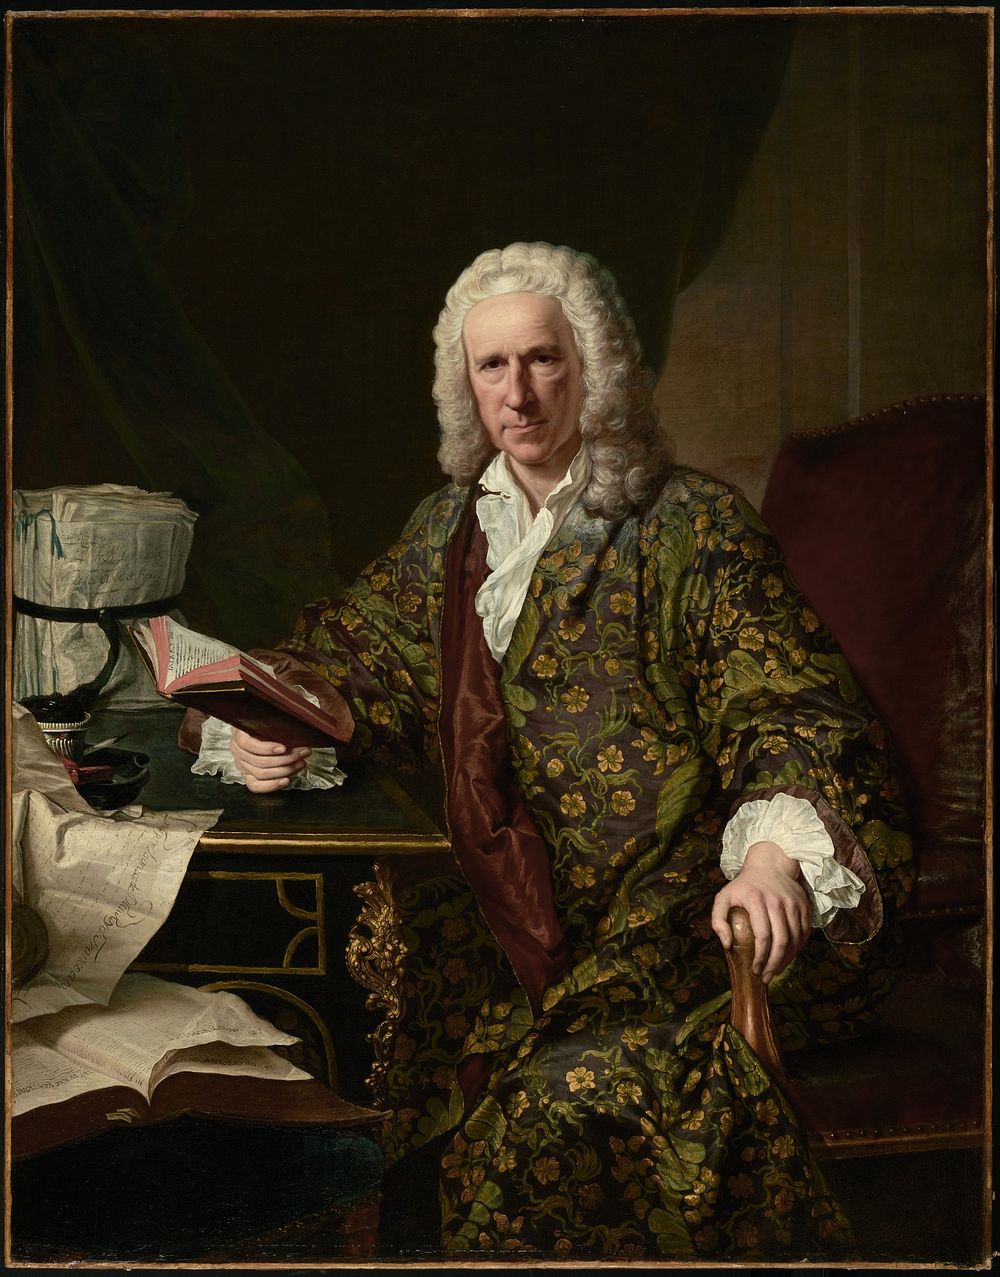 Portrait of Marc de Villiers by Jacques André Joseph Aved